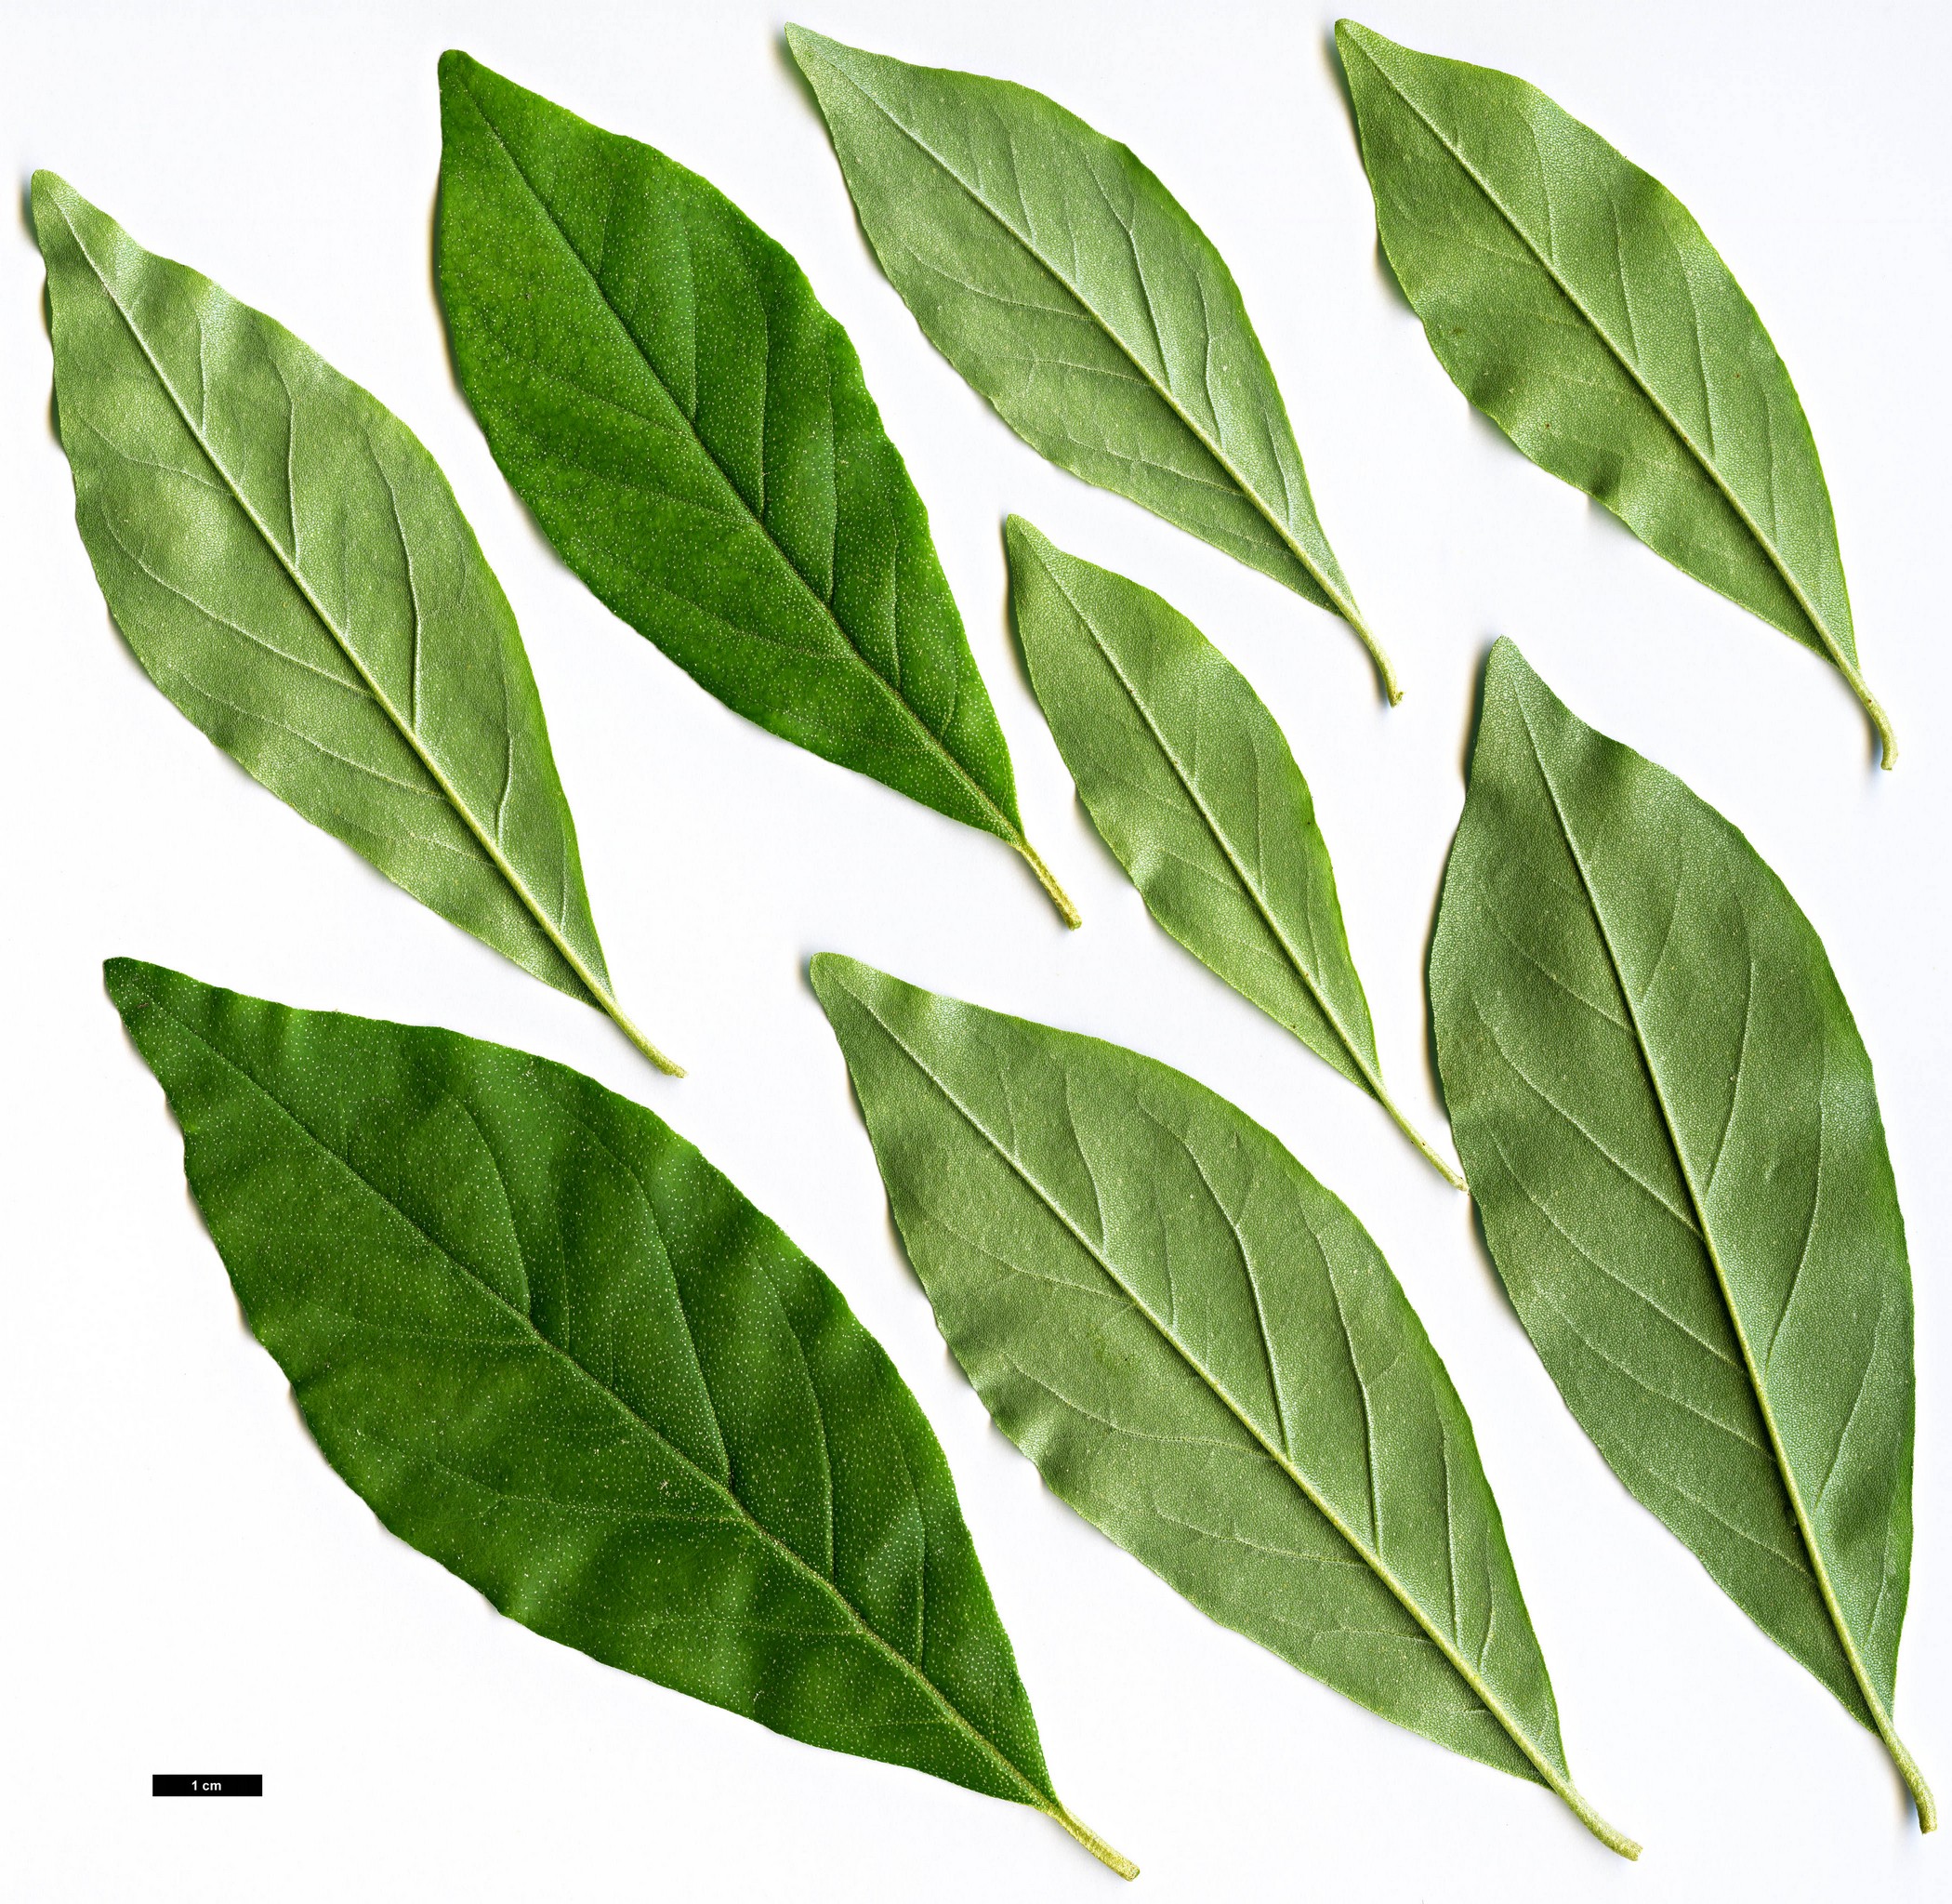 High resolution image: Family: Elaeagnaceae - Genus: Elaeagnus - Taxon: multiflora